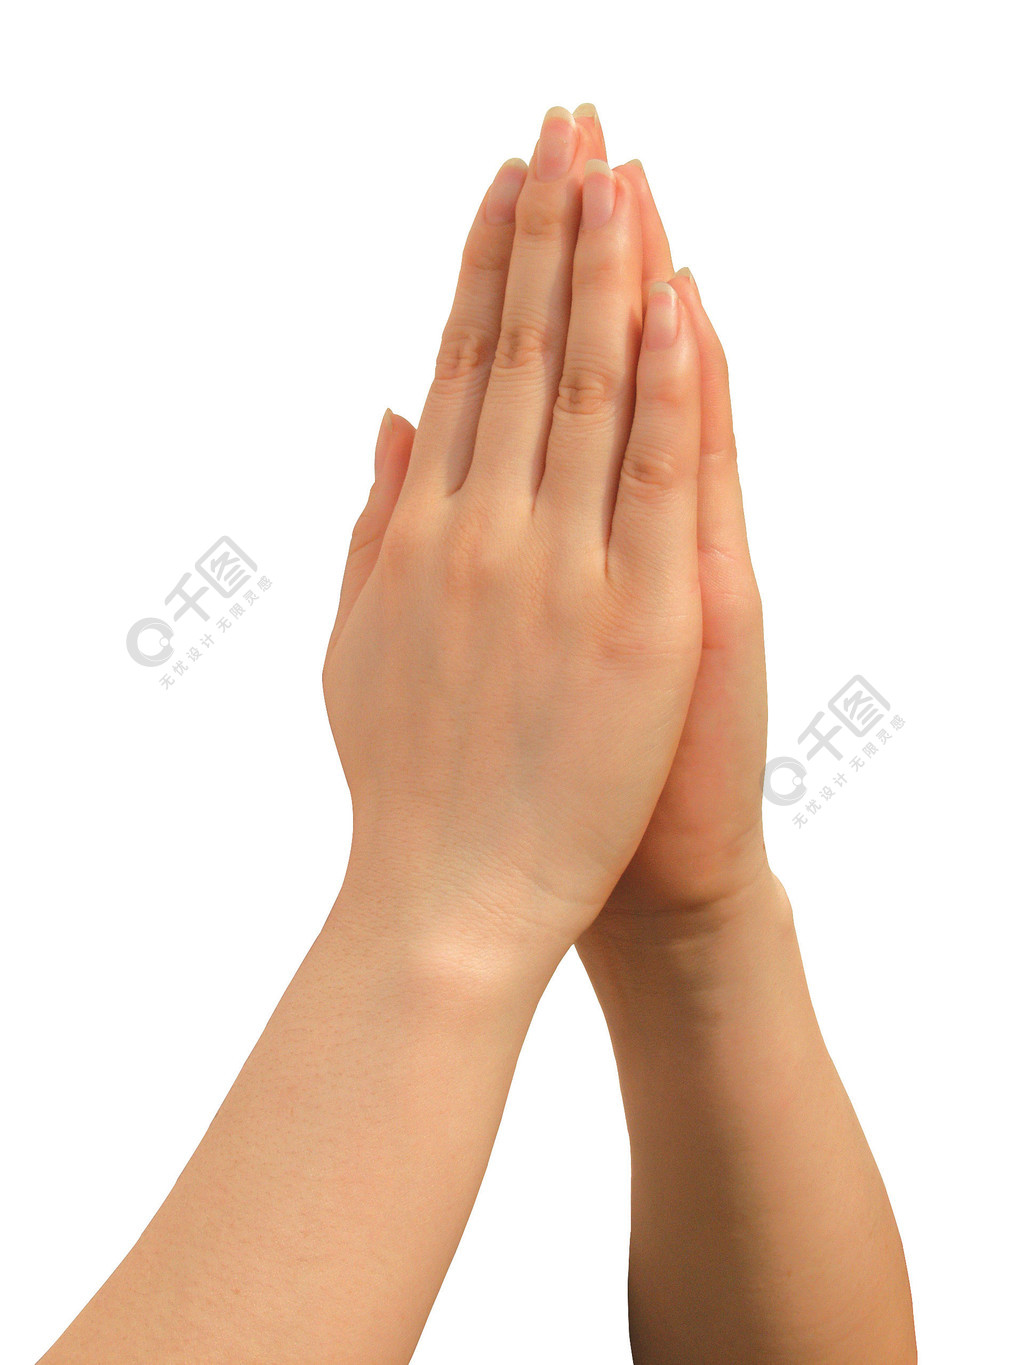 女人双手合十象征着祈祷1年前发布